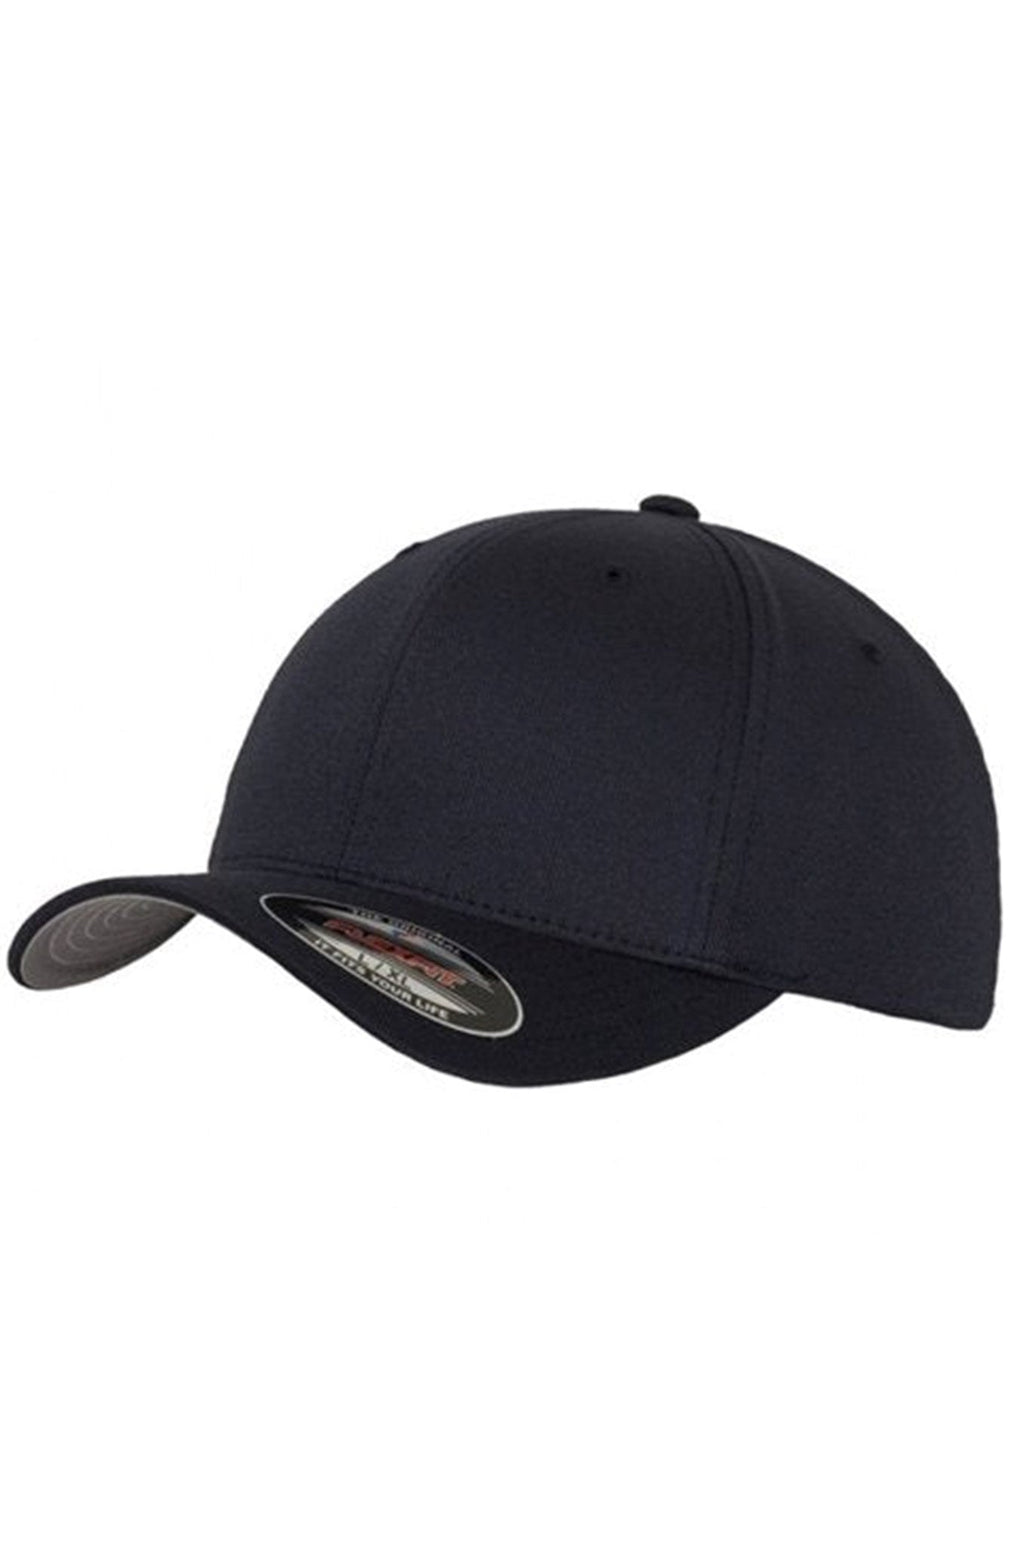 Originálna baseballová čiapka FlexFit - tmavo modrá